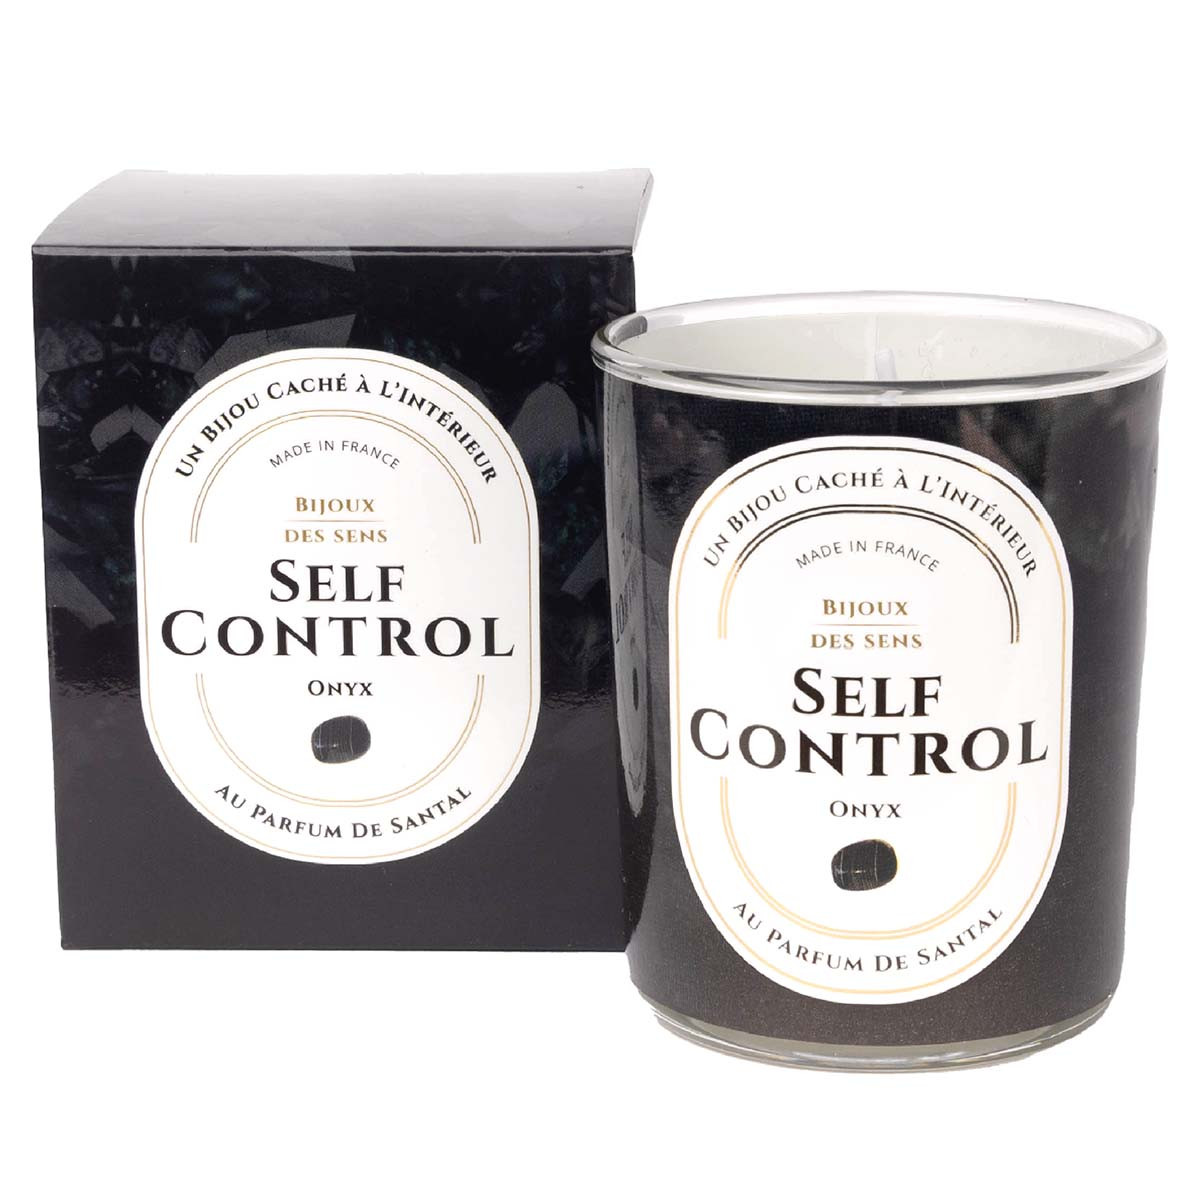 Self Control - Bougie Fragrance Bois De Santal et Collier Argenté Onyx